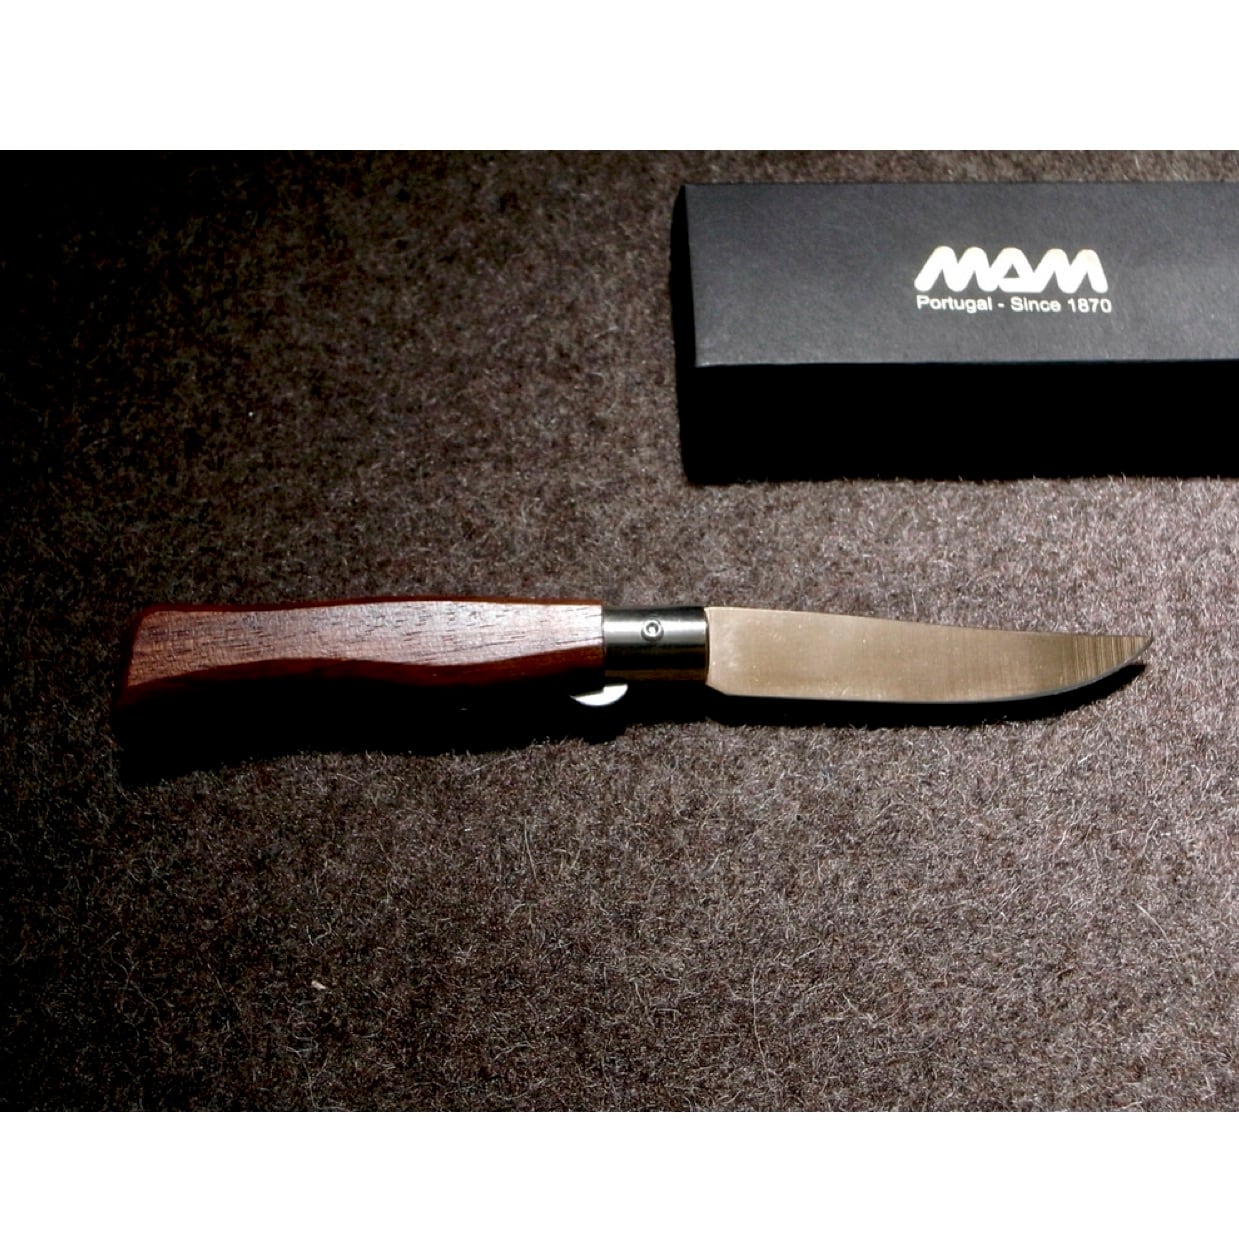 Pocketknife　Filmam　ポケットナイフ　145周年記念モデル　SECOND　anniversary　STATE　Titan　タイタン　マム　145th